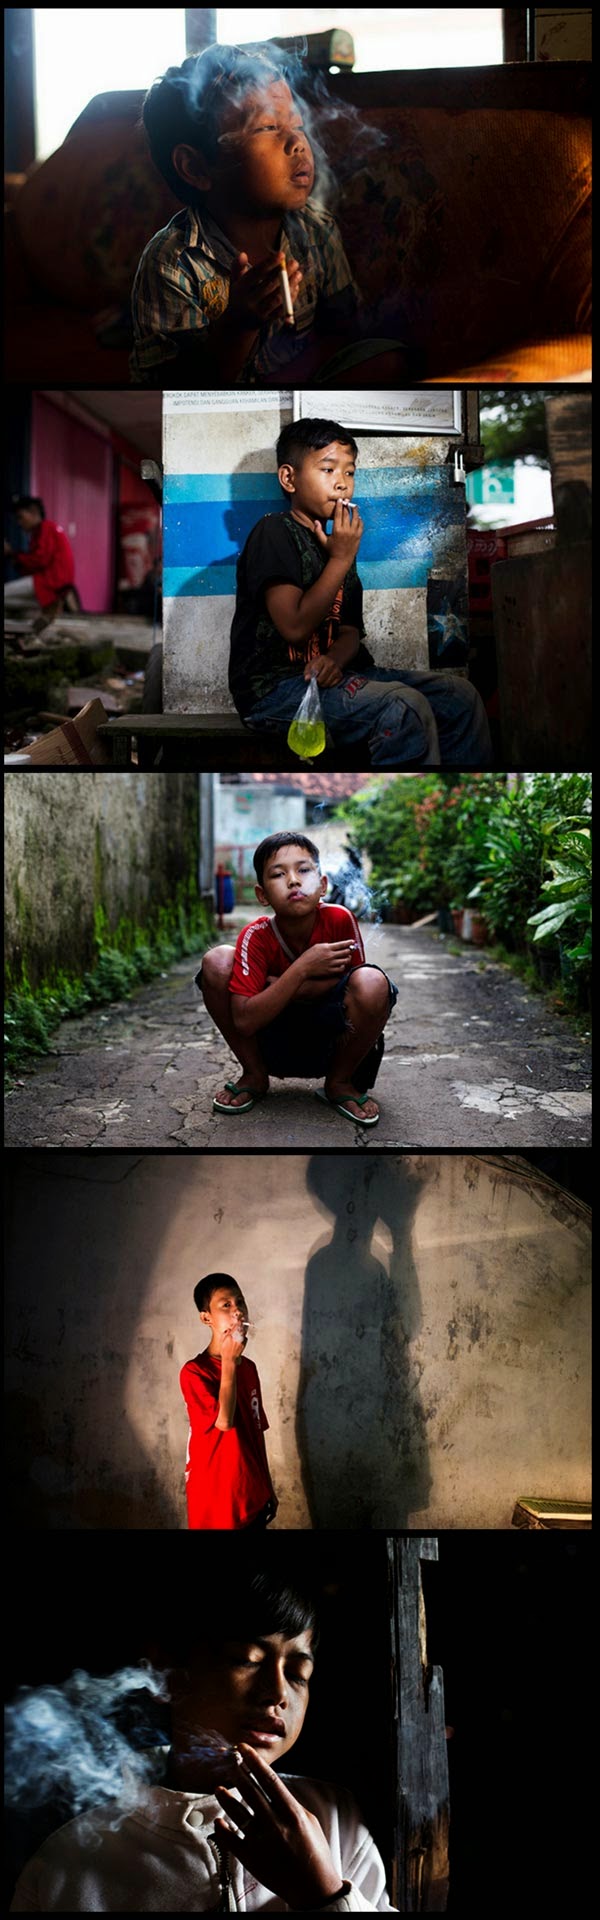 Blog Serius: Serius Indo - Marlboro Boys : Masalah Merokok 